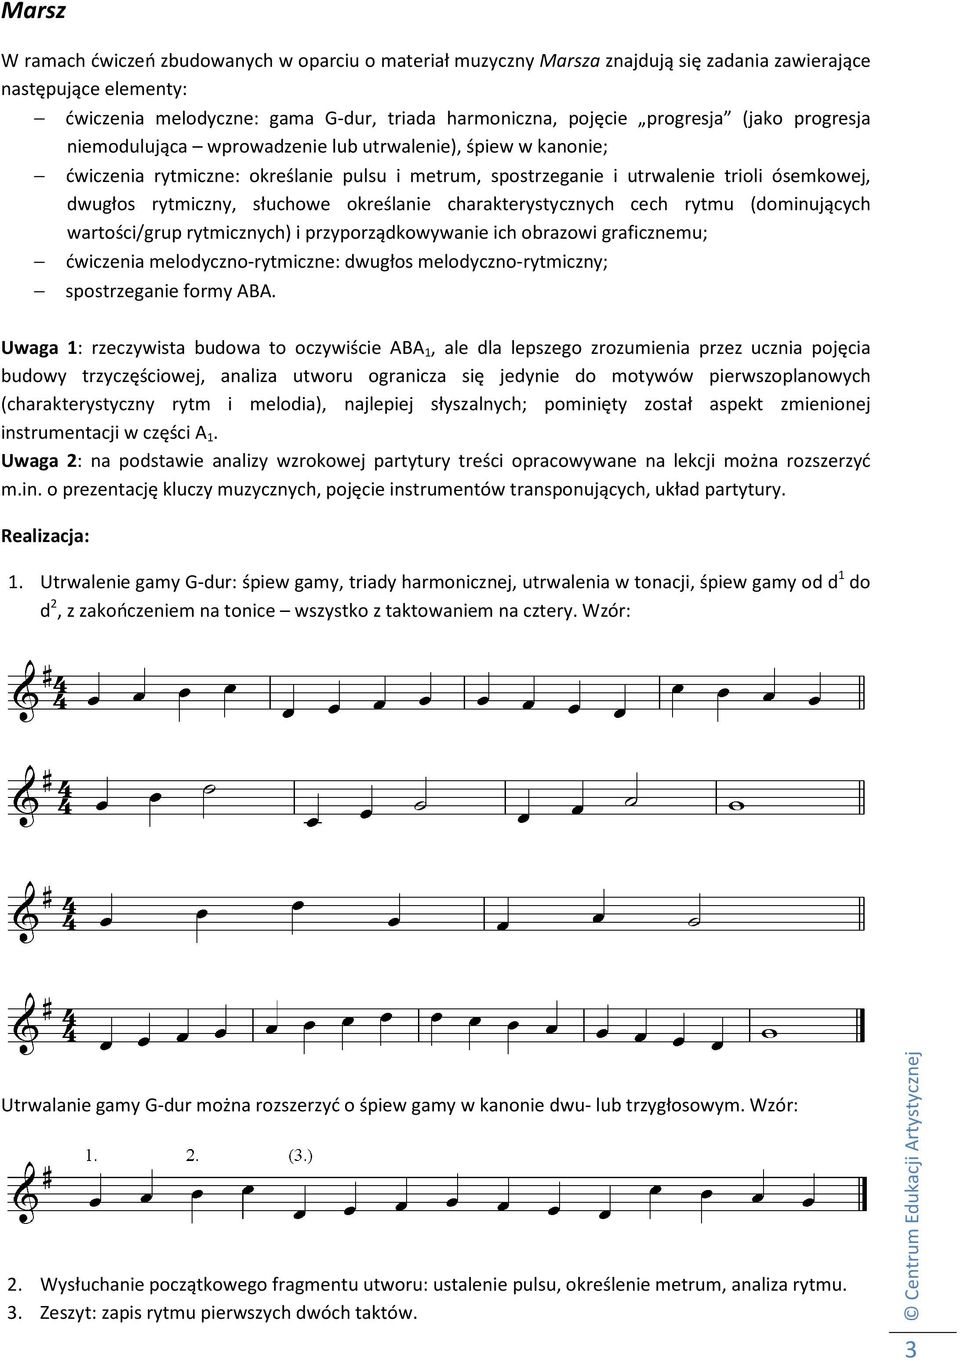 określanie charakterystycznych cech rytmu (dominujących wartości/grup rytmicznych) i przyporządkowywanie ich obrazowi graficznemu; ćwiczenia melodyczno-rytmiczne: dwugłos melodyczno-rytmiczny;